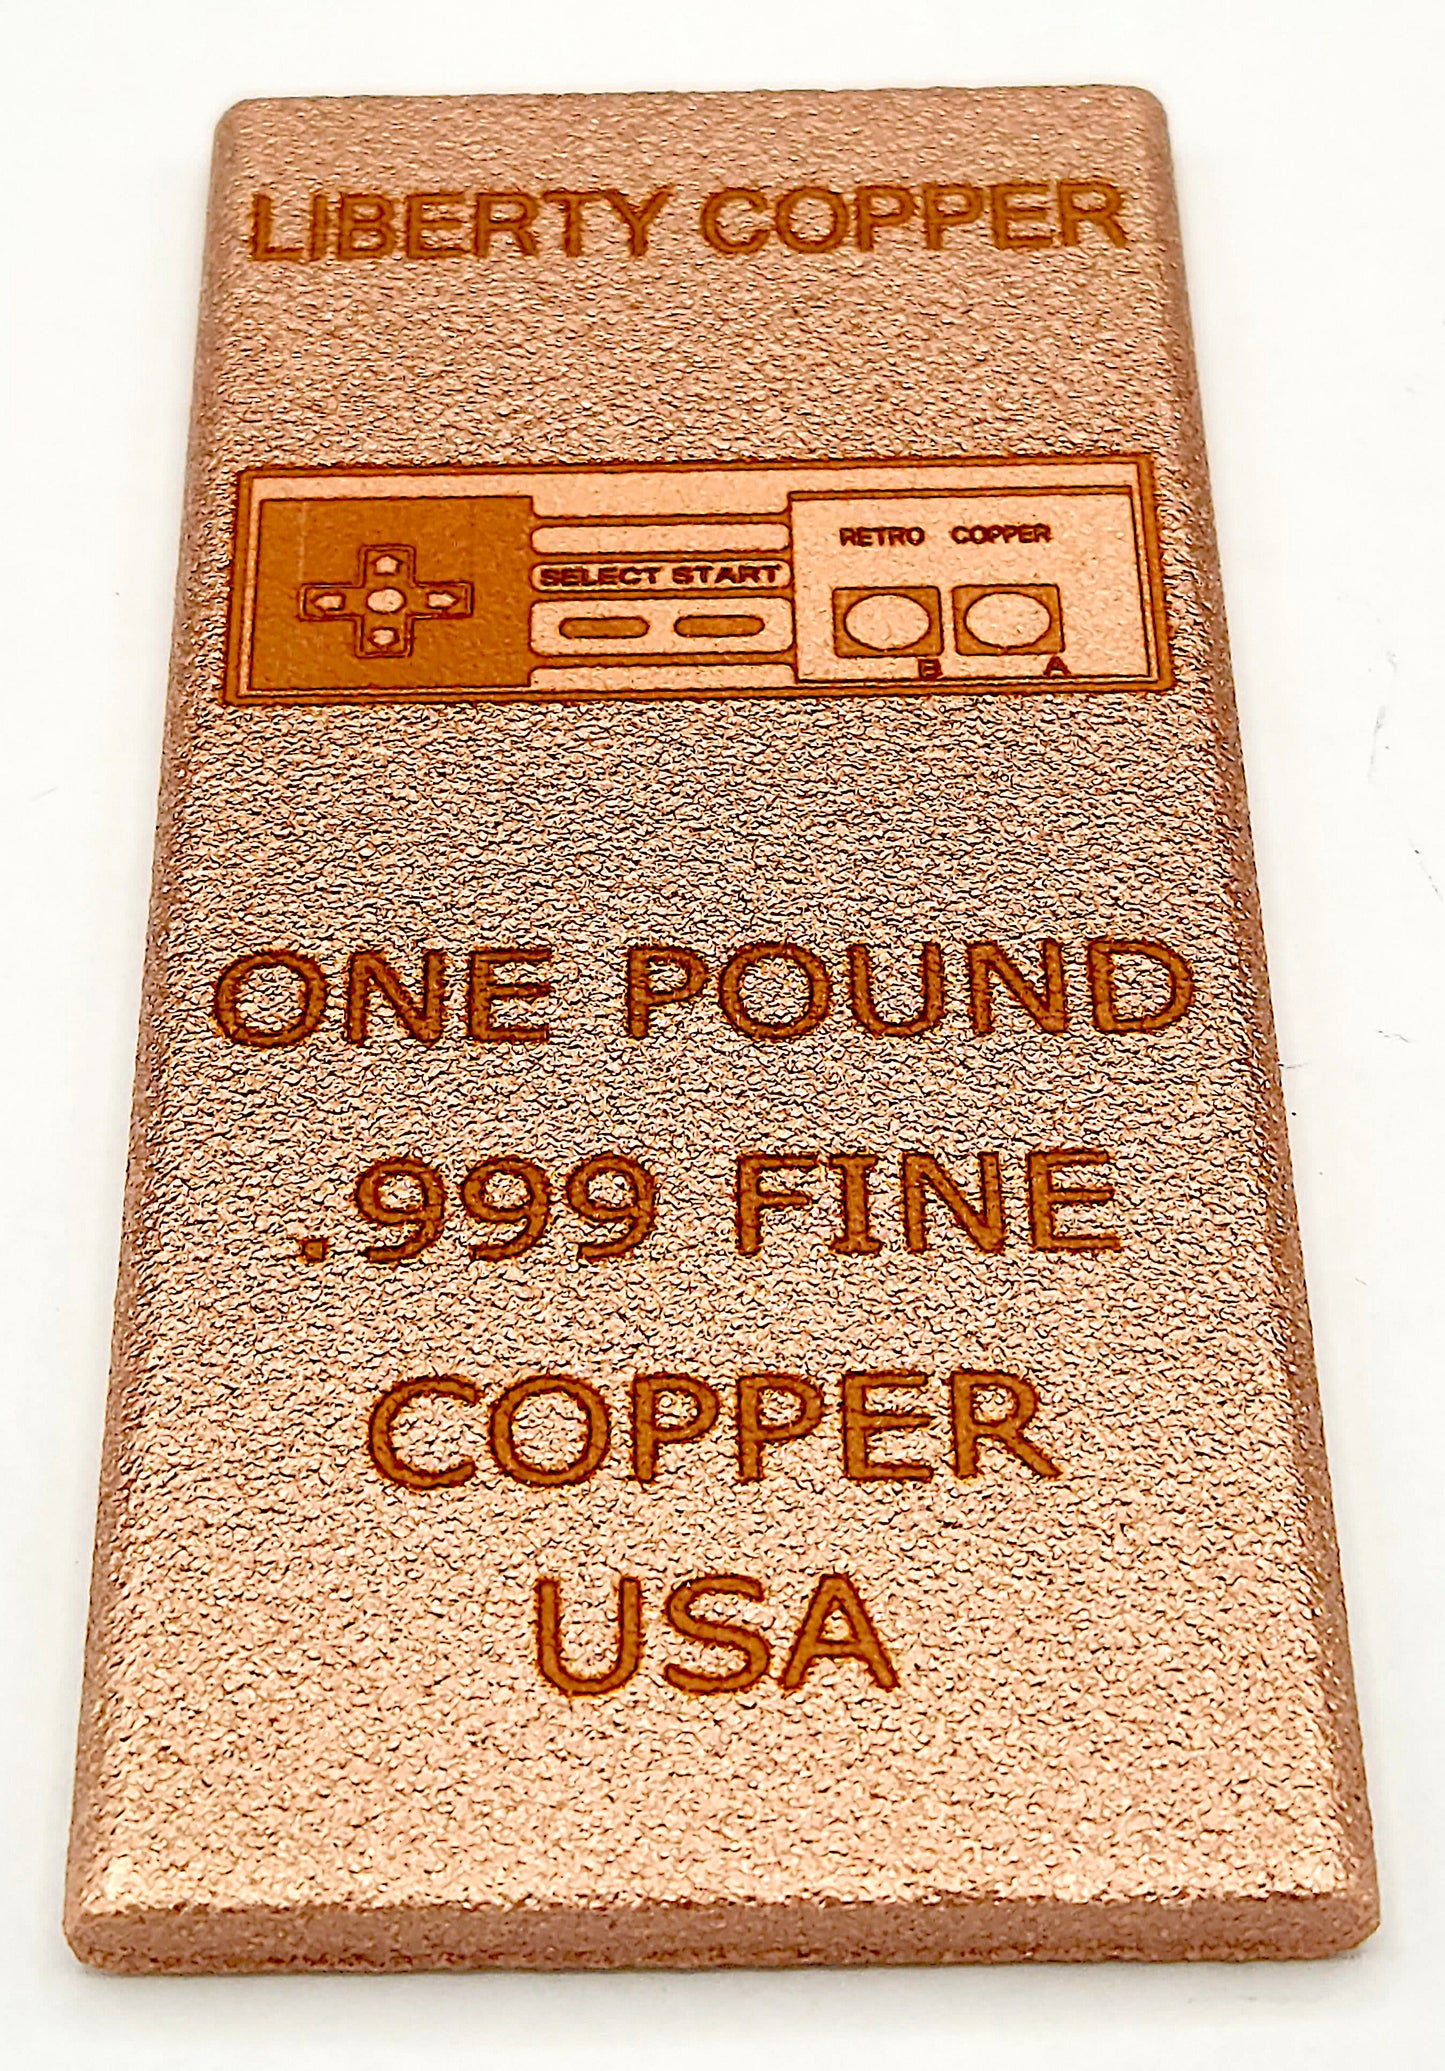 RETRO COPPER - GAME CONTROLLER DESIGN 1 POUND .999 FINE COPPER BULLION BAR By Liberty Copper